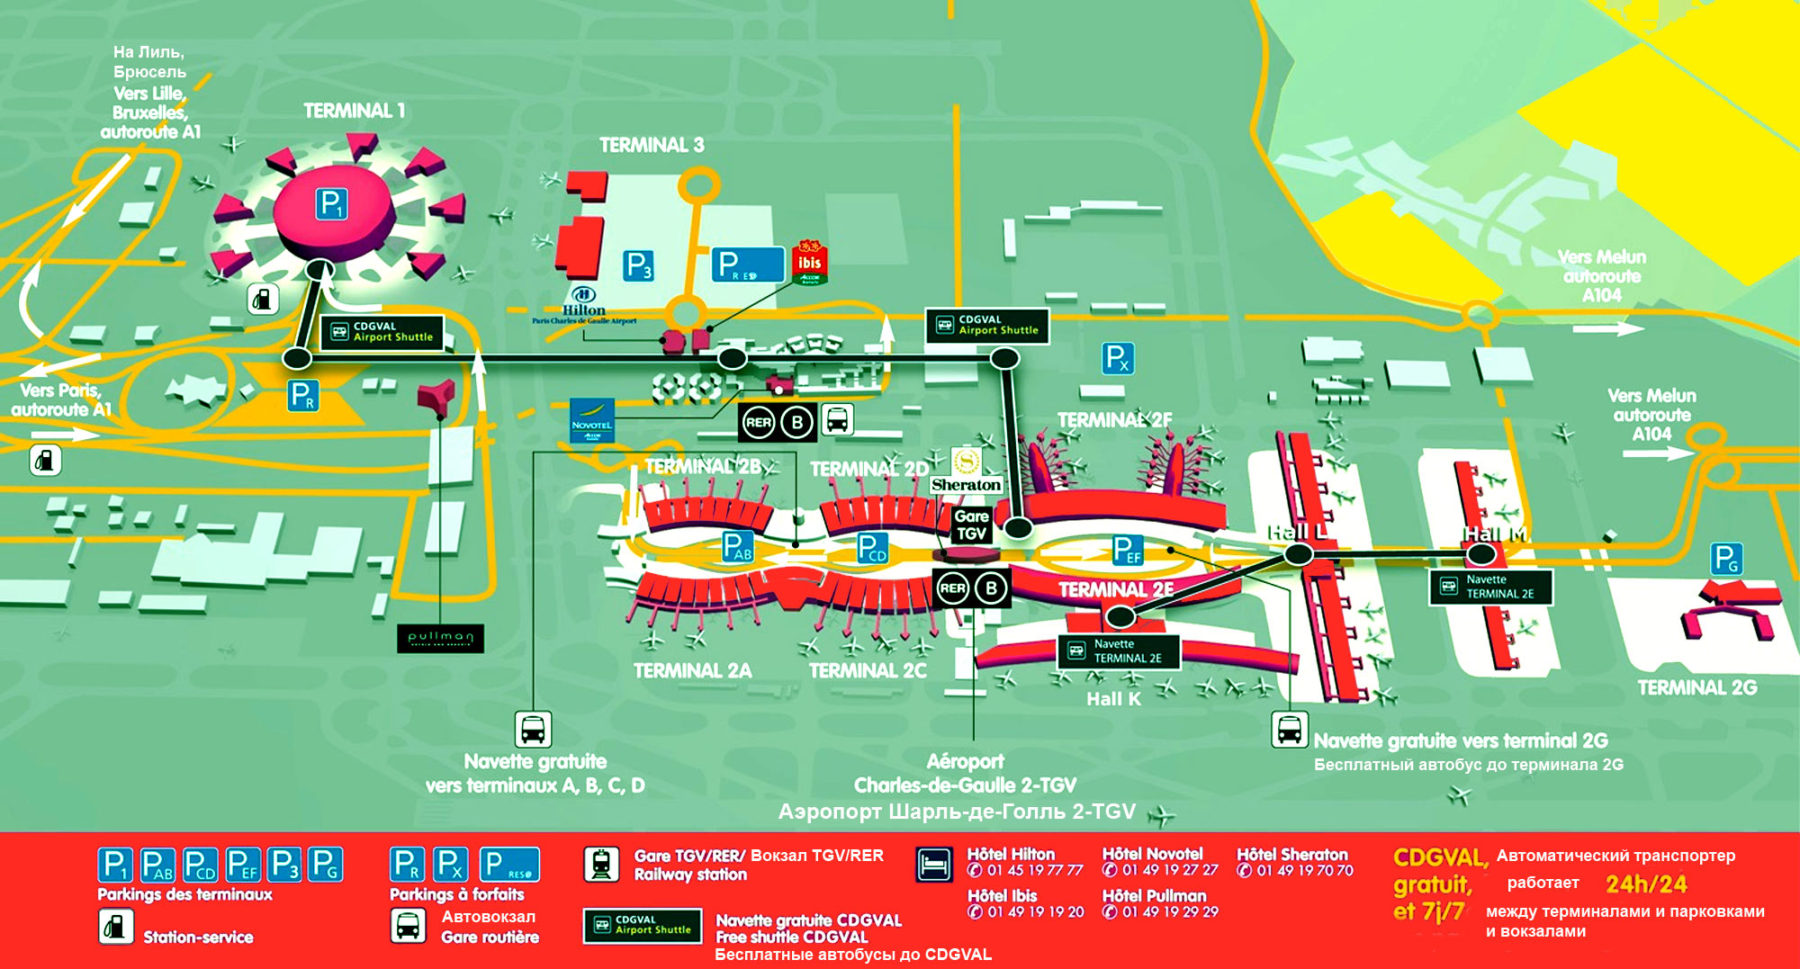 План схема терминалов аэропорта Шарль-де-Голль в Париже на русском языке